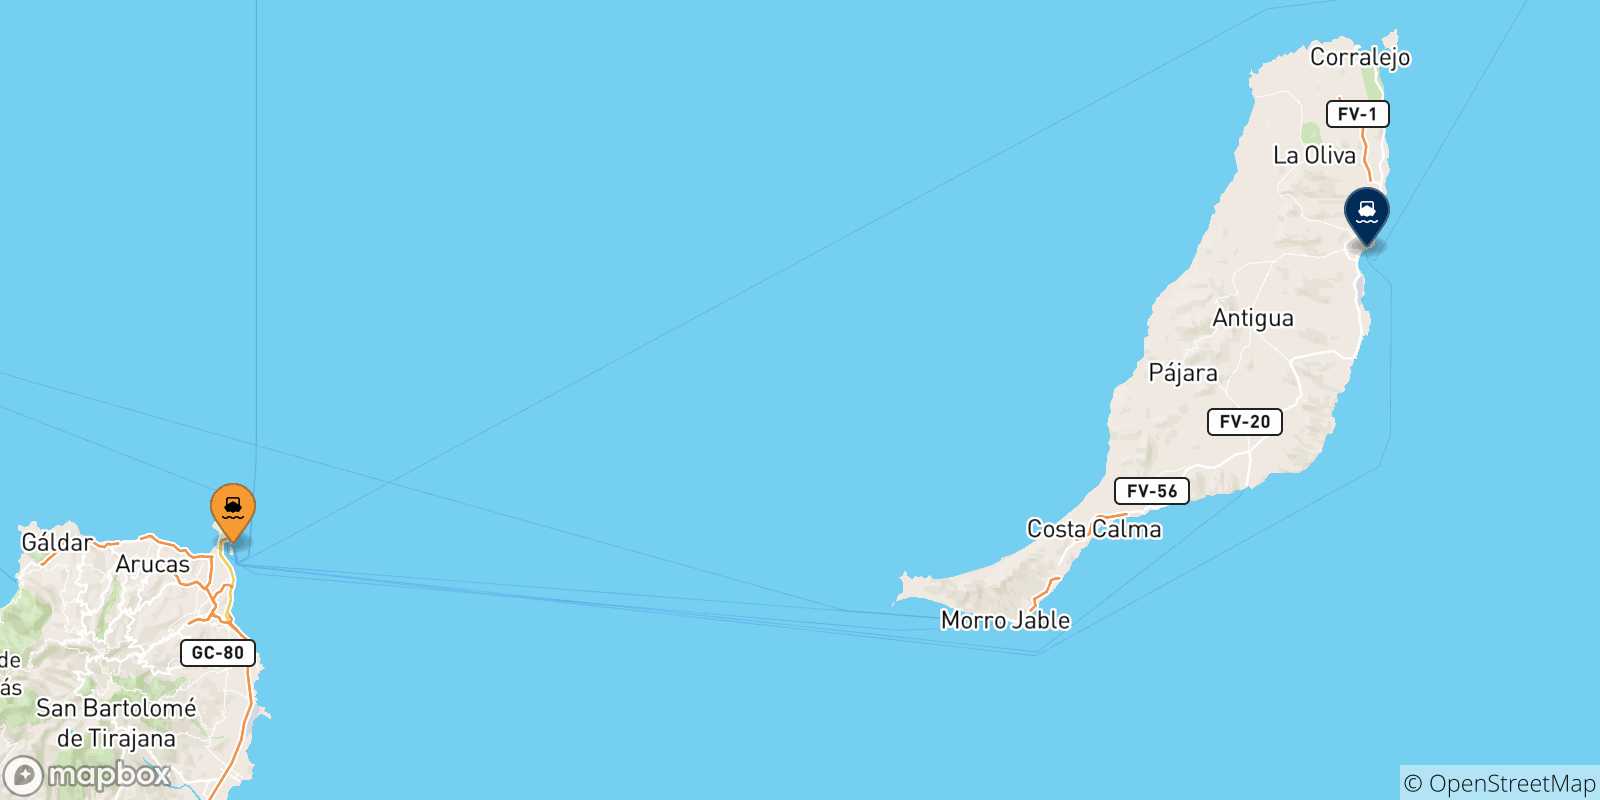 Mappa delle possibili rotte tra la Spagna e Puerto Del Rosario (Fuerteventura)